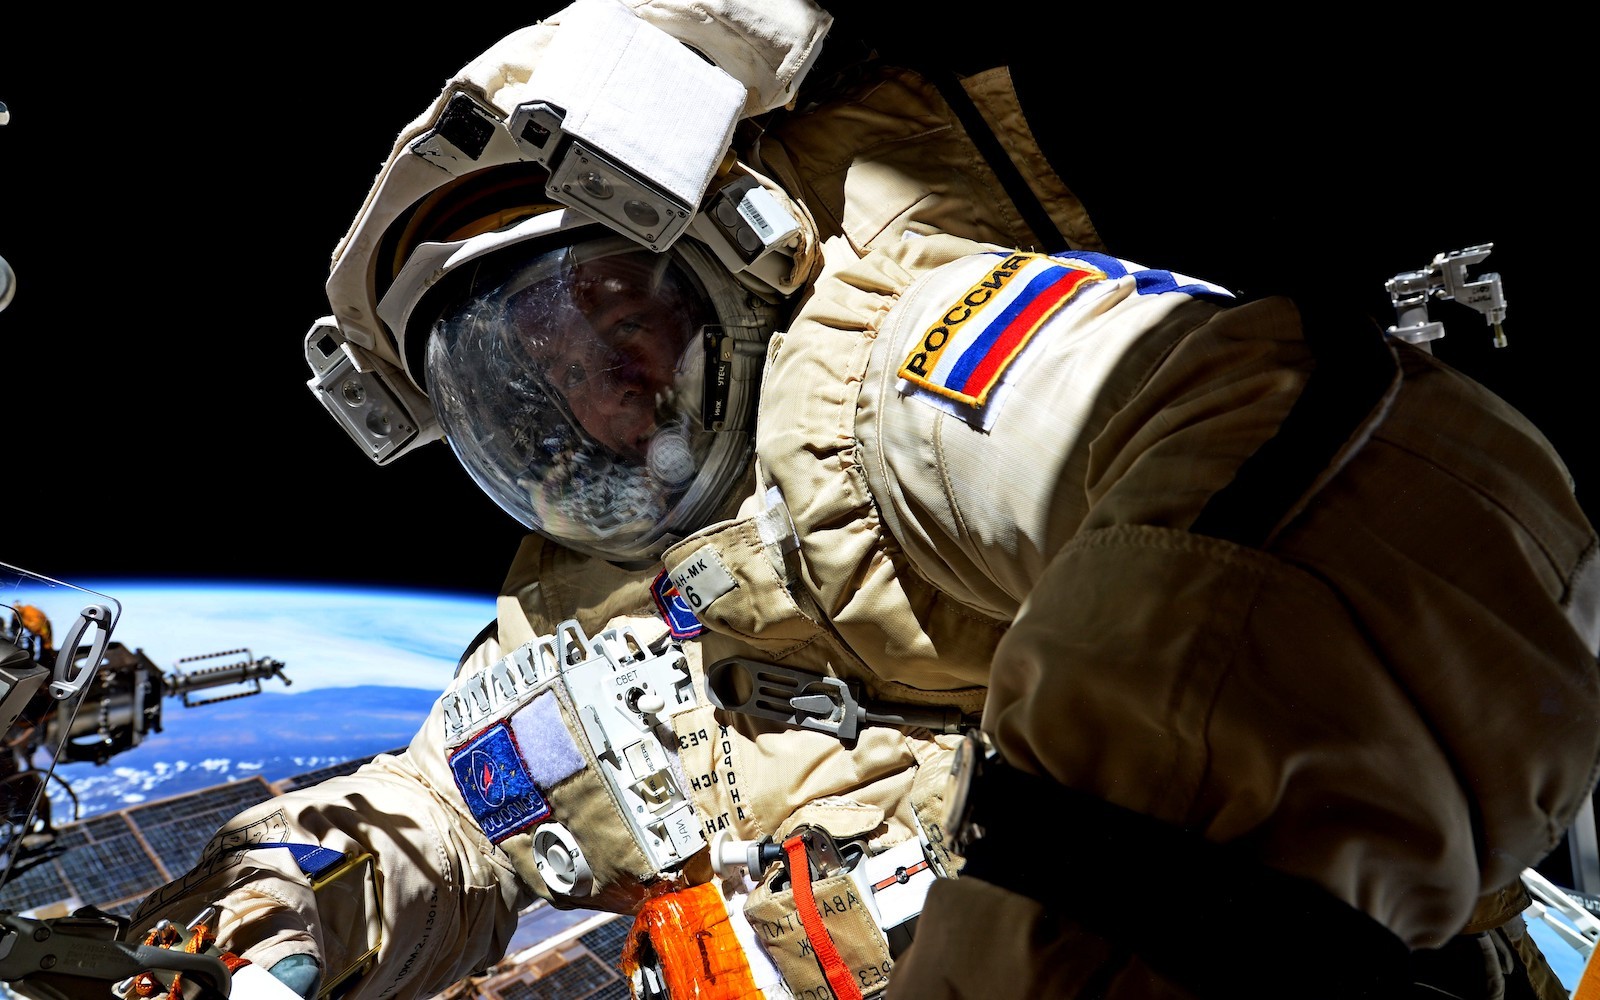 Rosyjski kosmonauta, Siergiej Riazański - podczas spaceru kosmicznego. Fot. Roskosmos [roscosmos.ru]